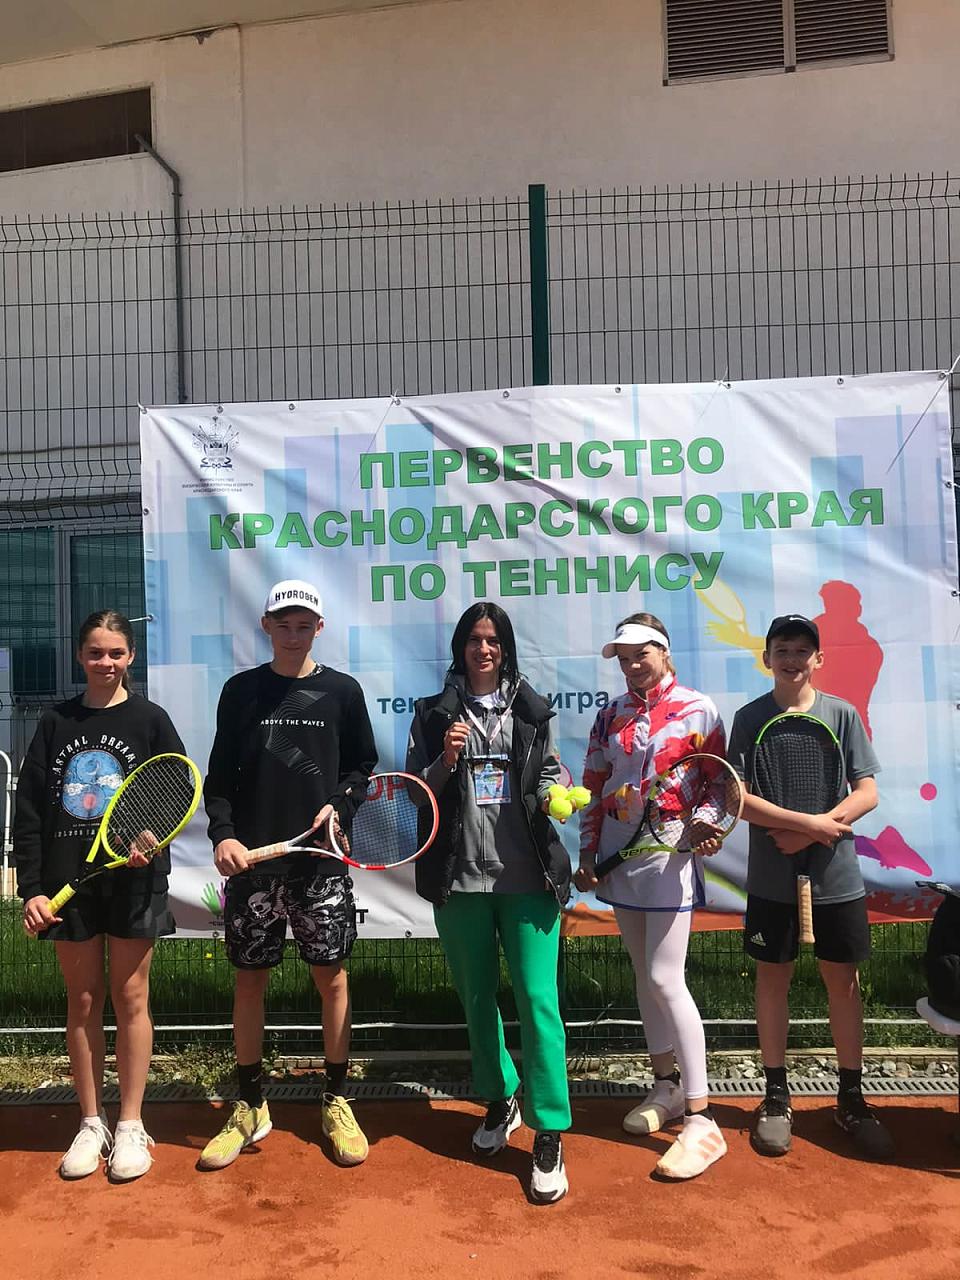 Первенство Краснодарского края по теннису состоится в Сочи